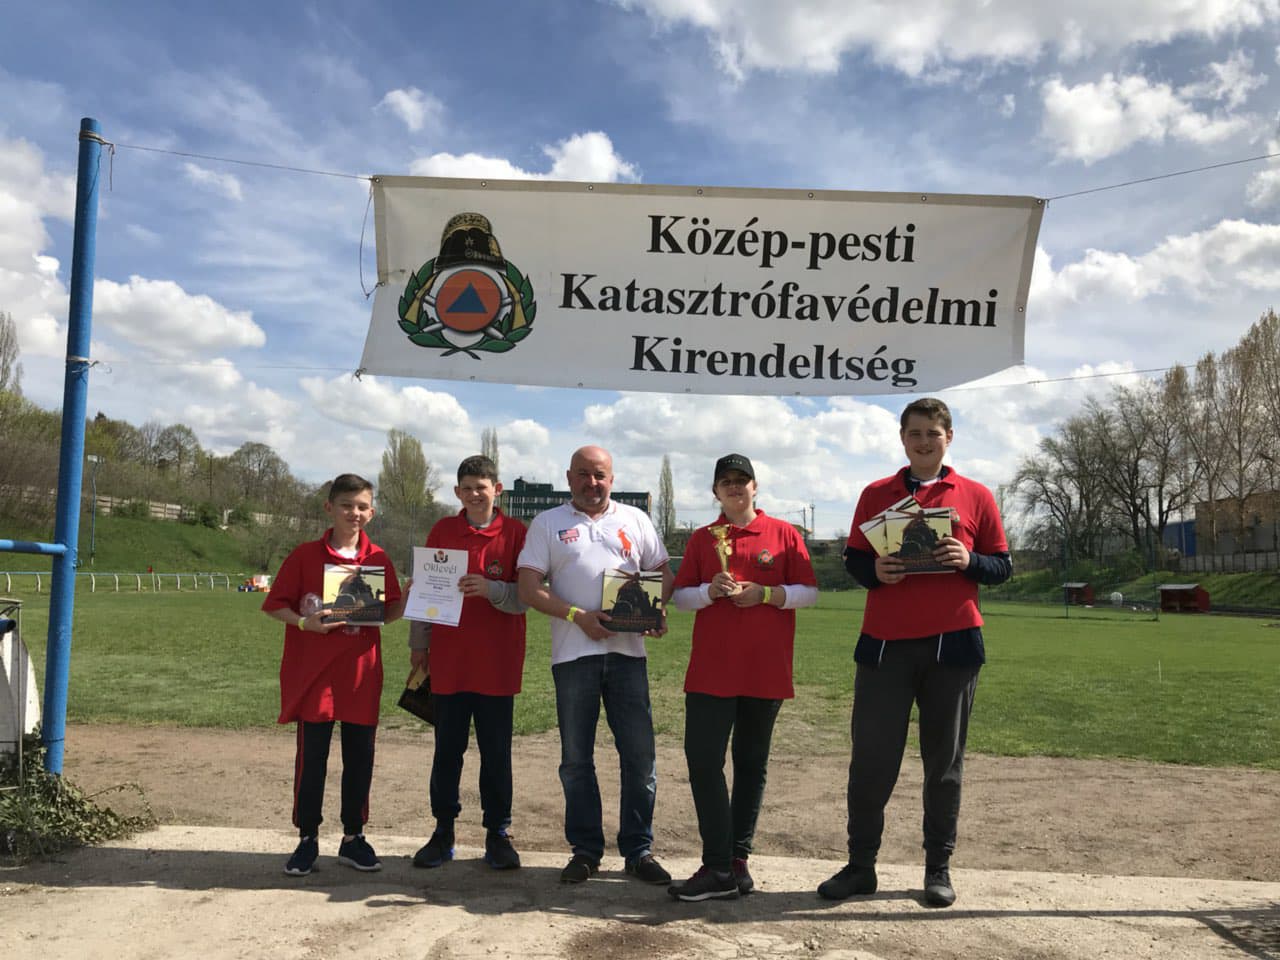 Команда школярів із Рахівщини виборола в Угорщині першість з-поміж 60 команд із пожежно-прикладного спорту (ФОТО)